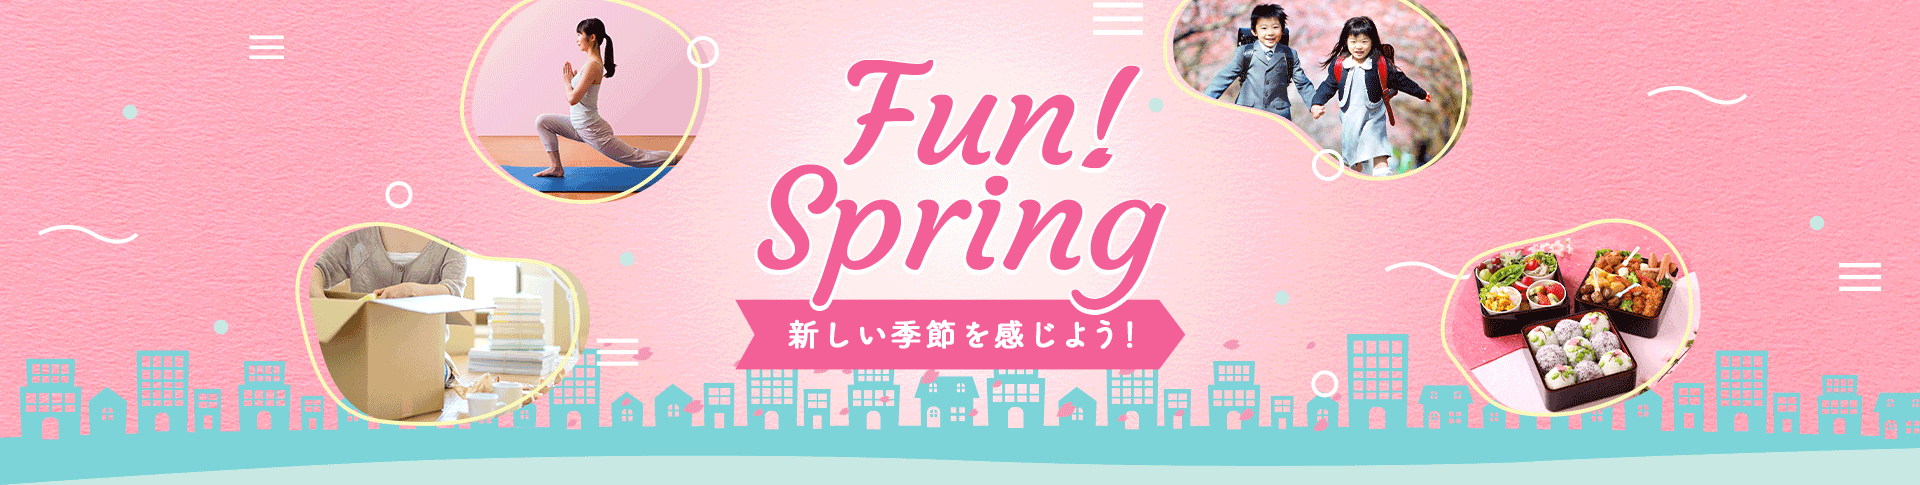 Fun! Spring